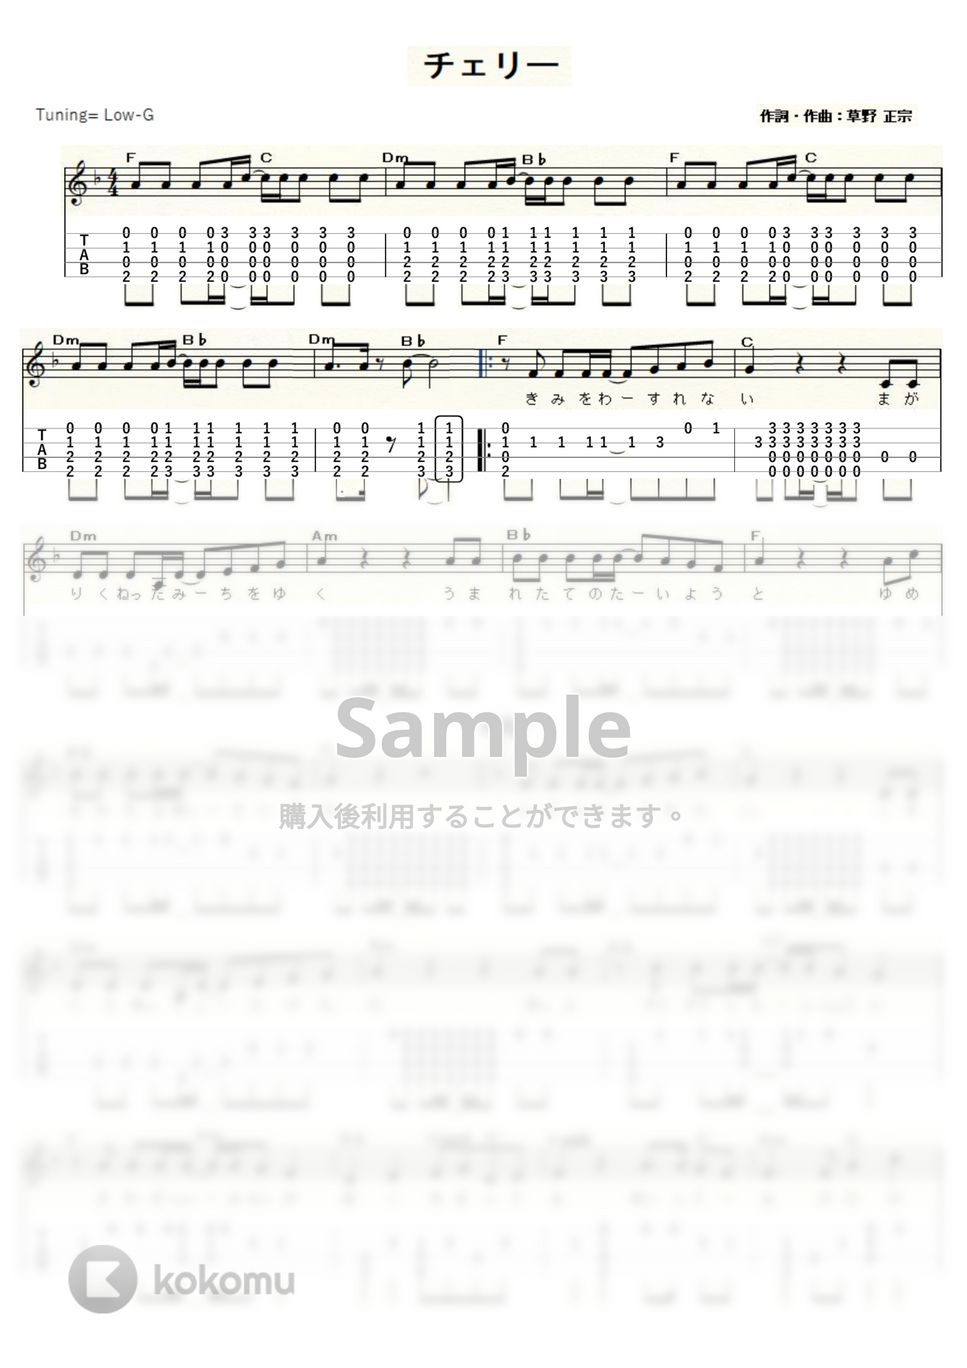 スピッツ - チェリー (ｳｸﾚﾚｿﾛ/Low-G/中級) by ukulelepapa